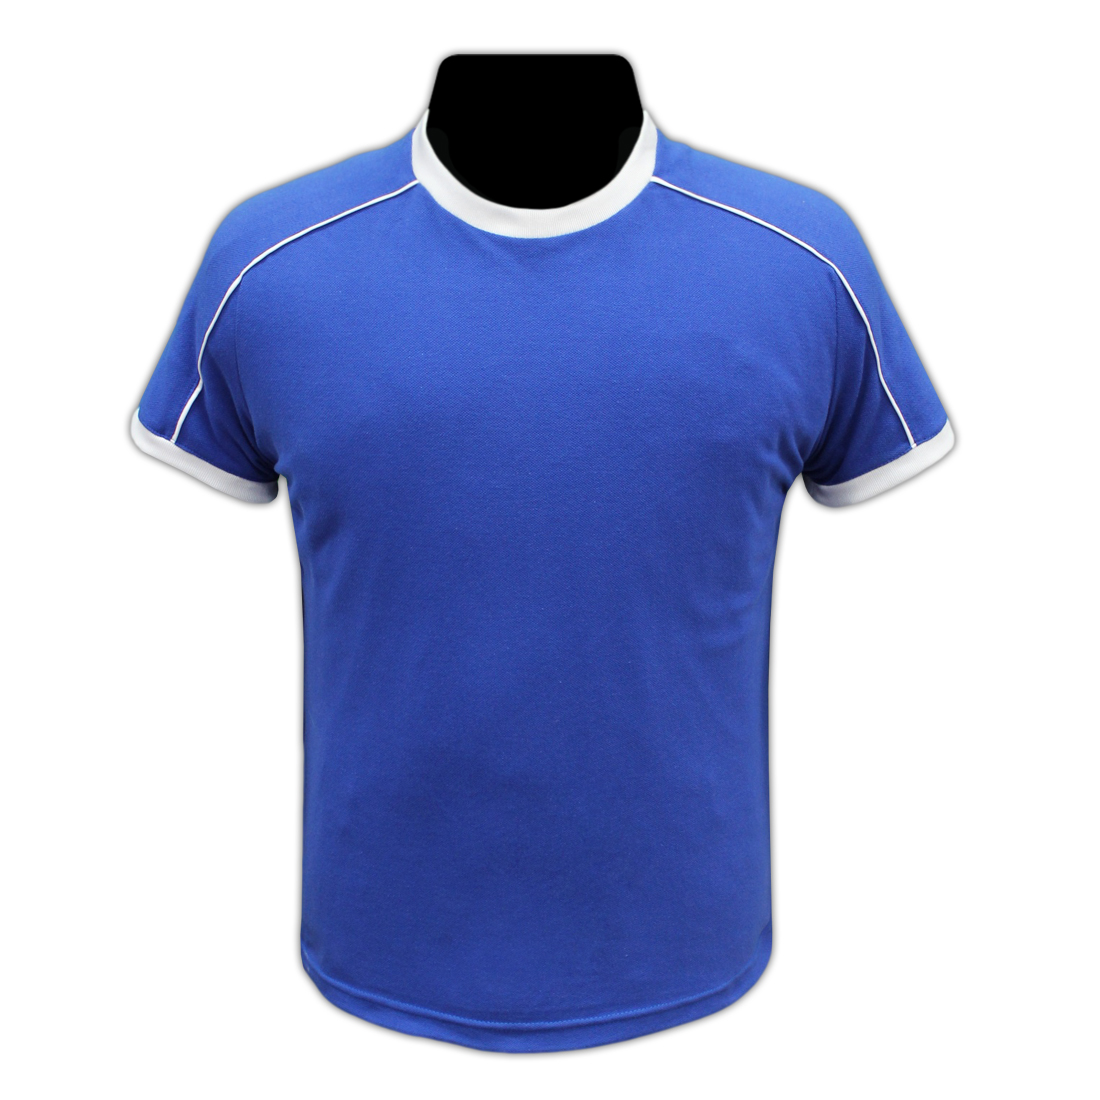 Купить футболки нижний. Футбольная майка. Футболка мужская футбольная. Синяя футбольная футболка. Синие футболки для футбола.